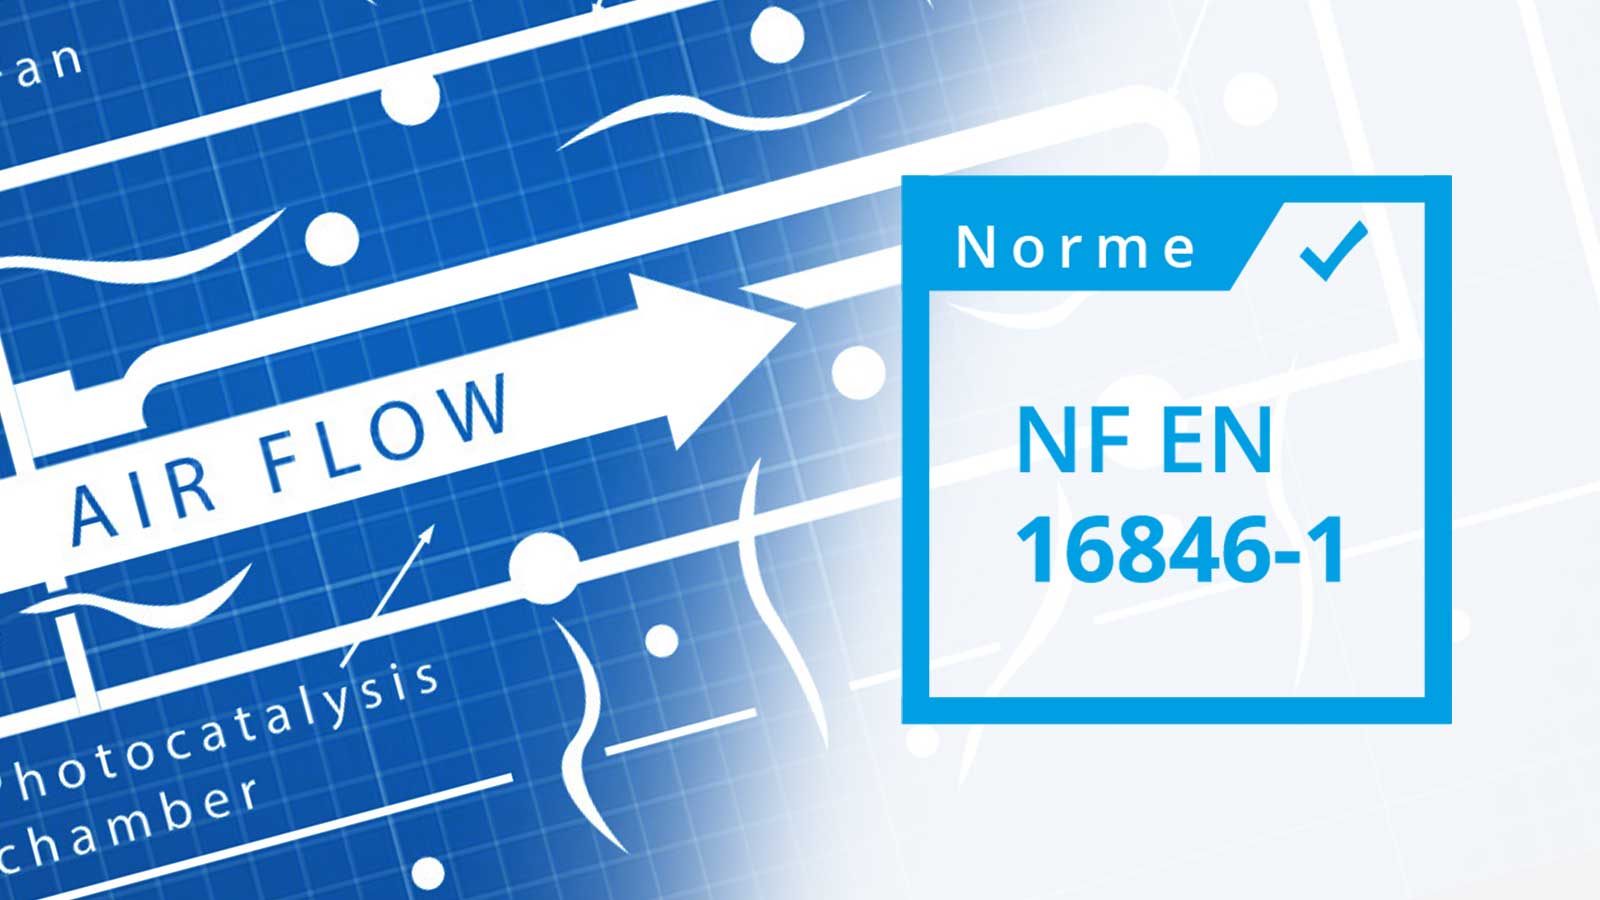 Logo norme NF EN 16846-1 écrit dans un carrer blanc avec un contour bleu ciel. Avec une images de fond reprenant un plan schématique de fonctionnement de la photocatalyse sur fond bleu sombre a quadrillage fin blanc. 